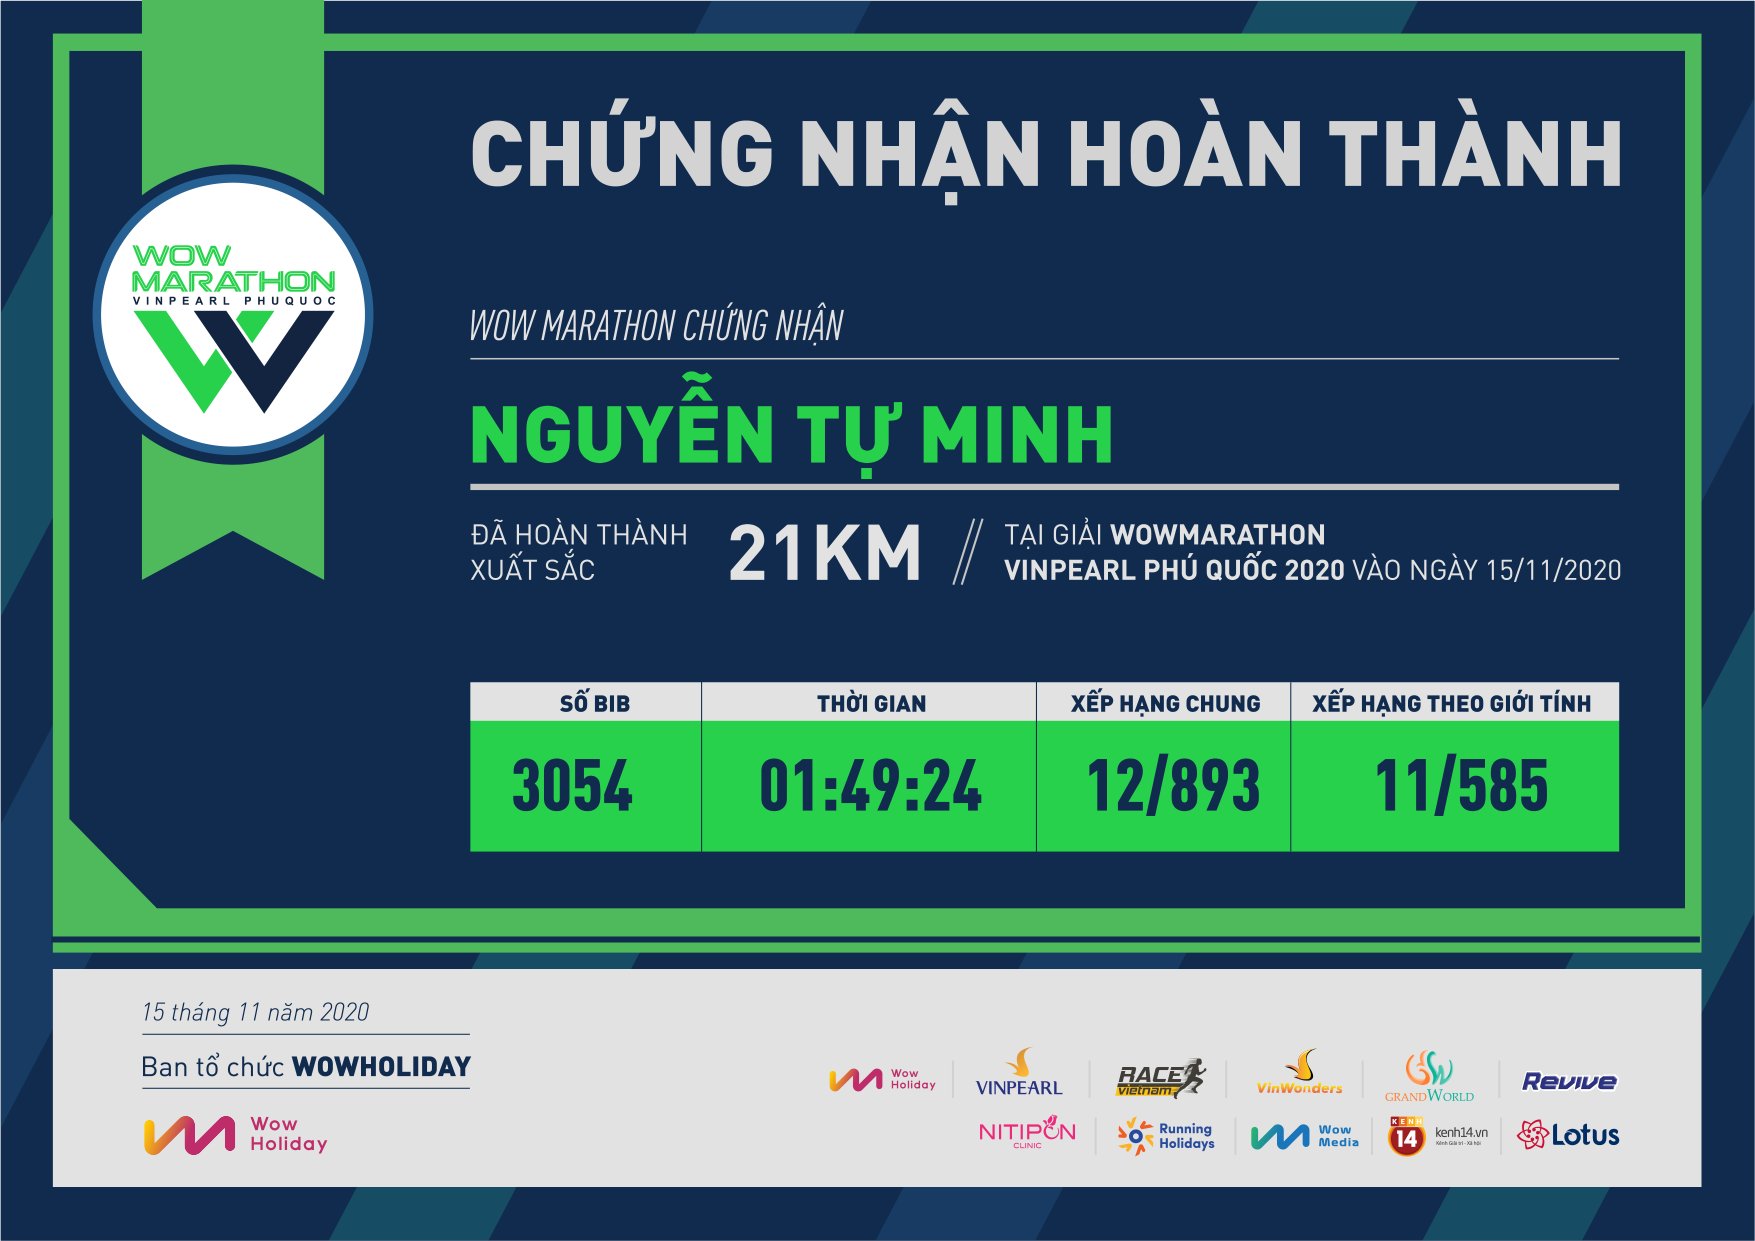 3054 - Nguyễn Tự Minh